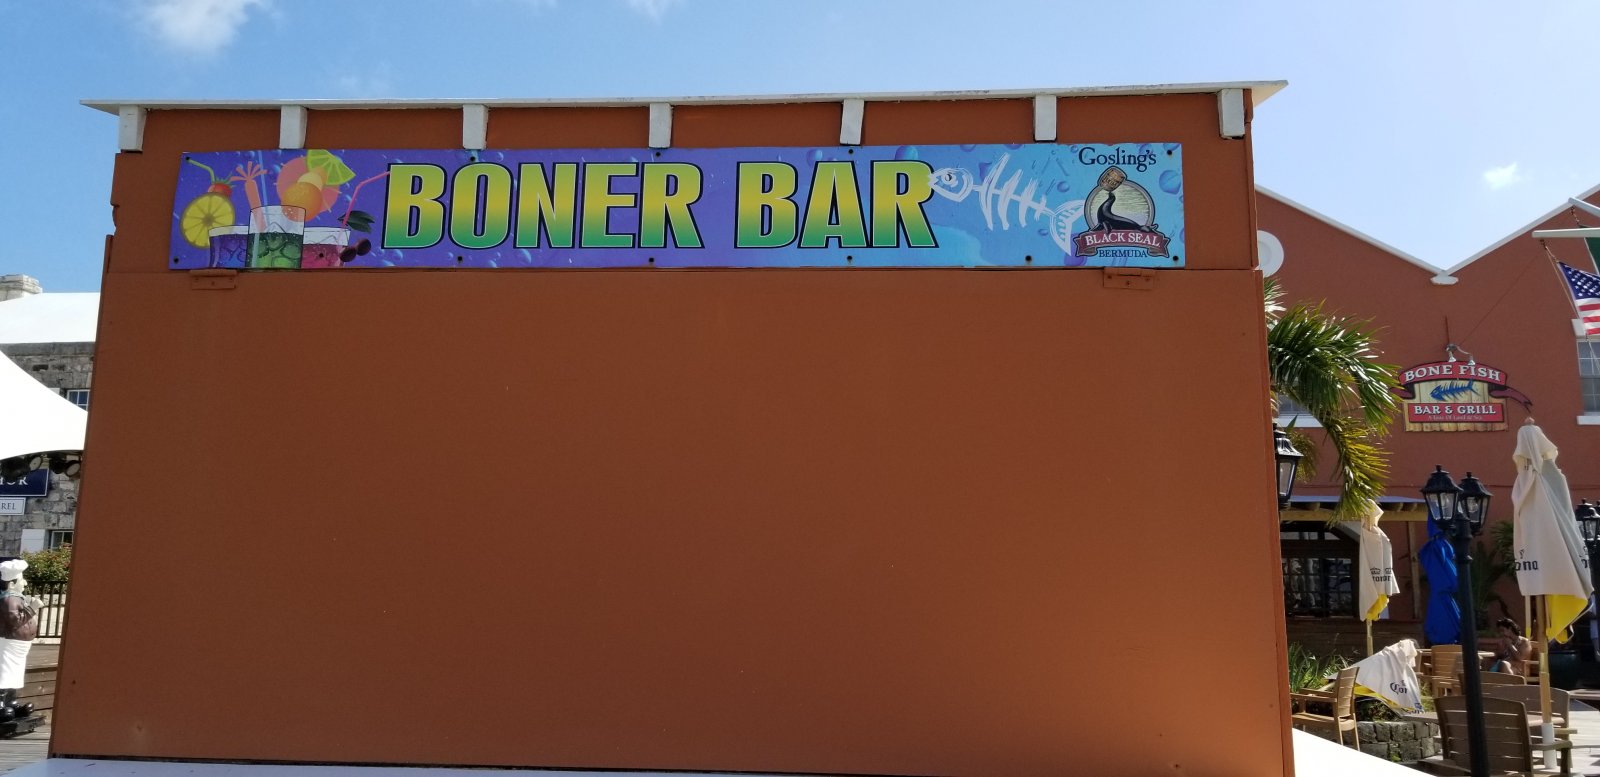 20190622_084840 Boner Bar.jpg